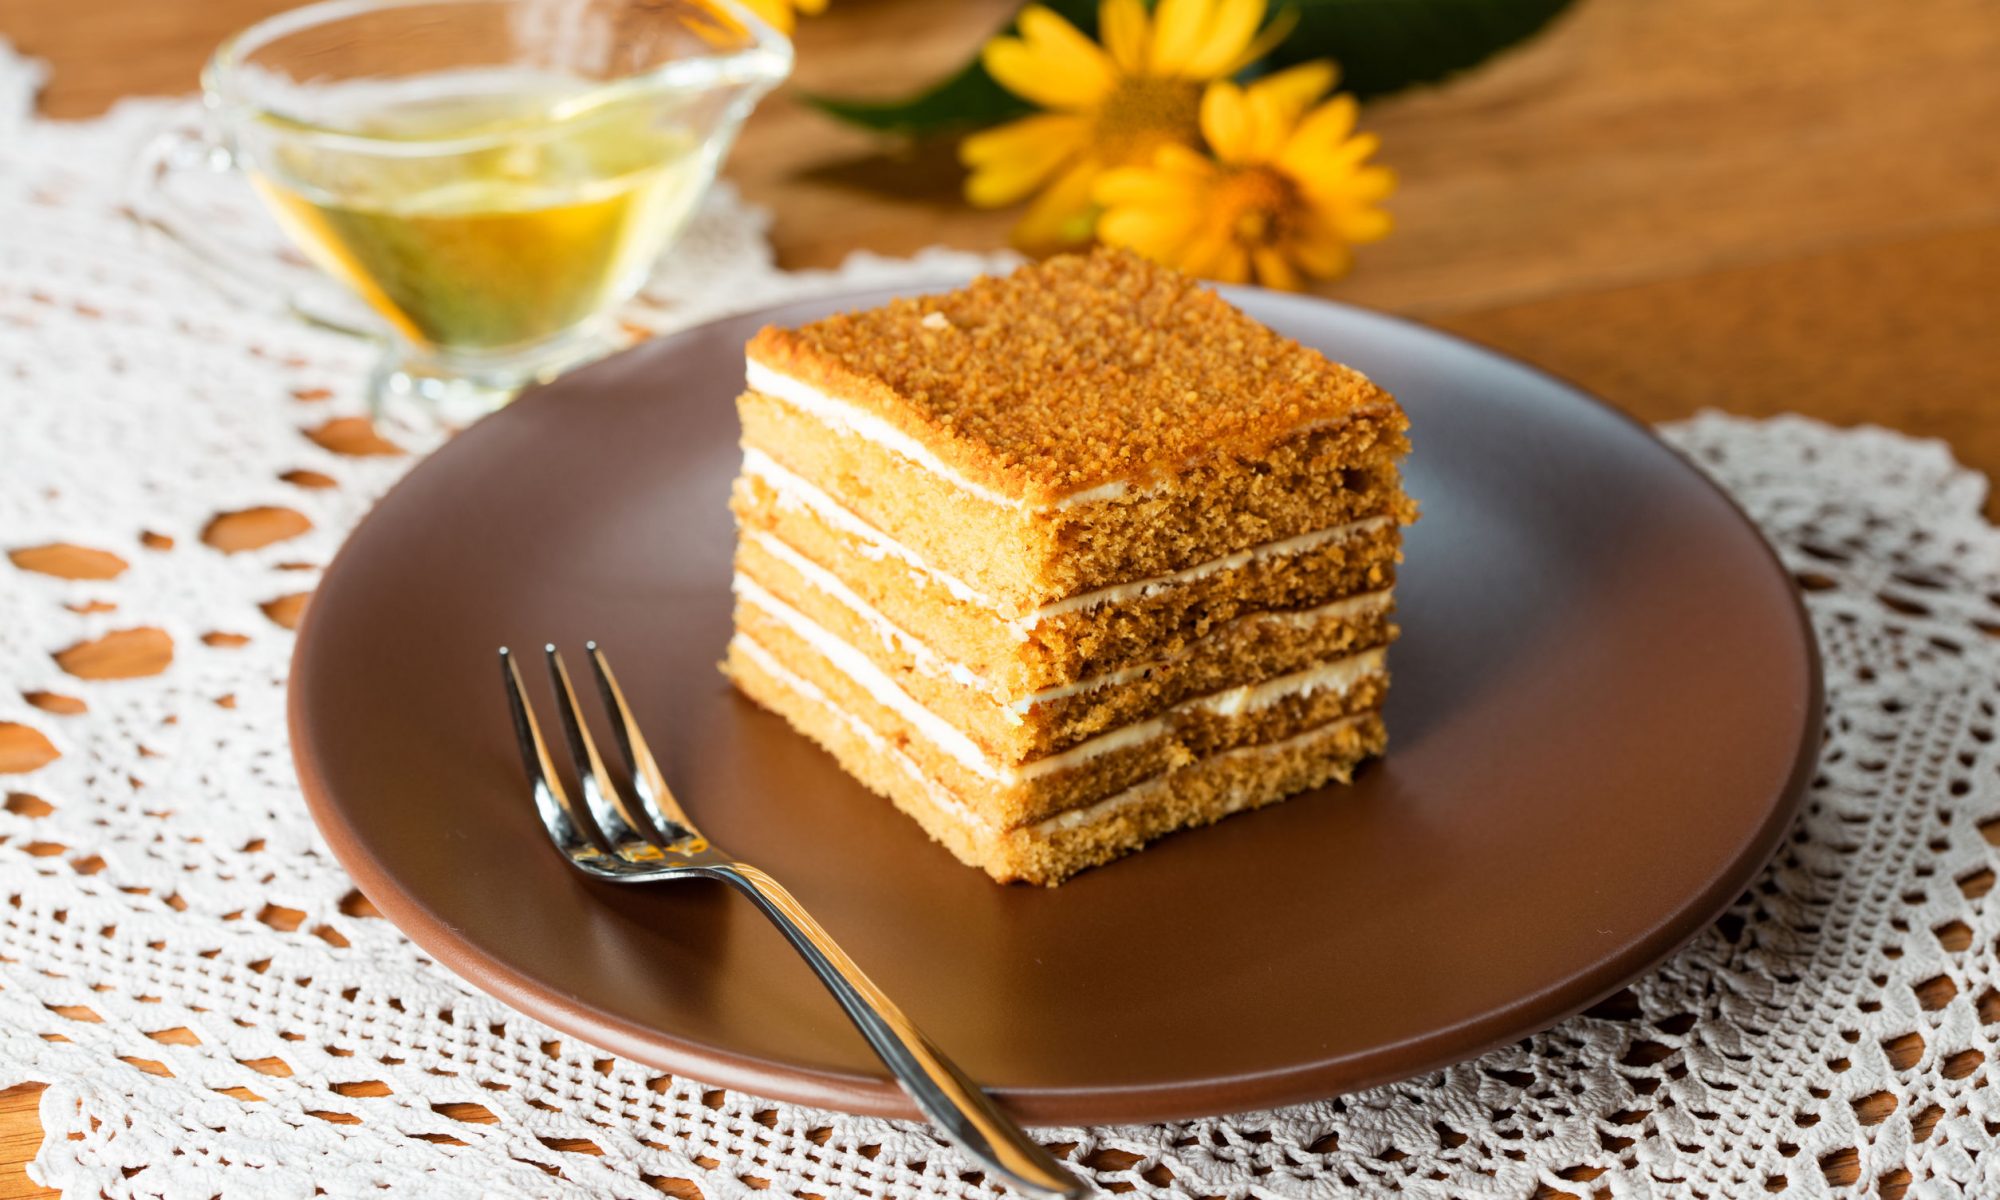 Пошаговый рецепт приготовления торта медовика в домашних условиях